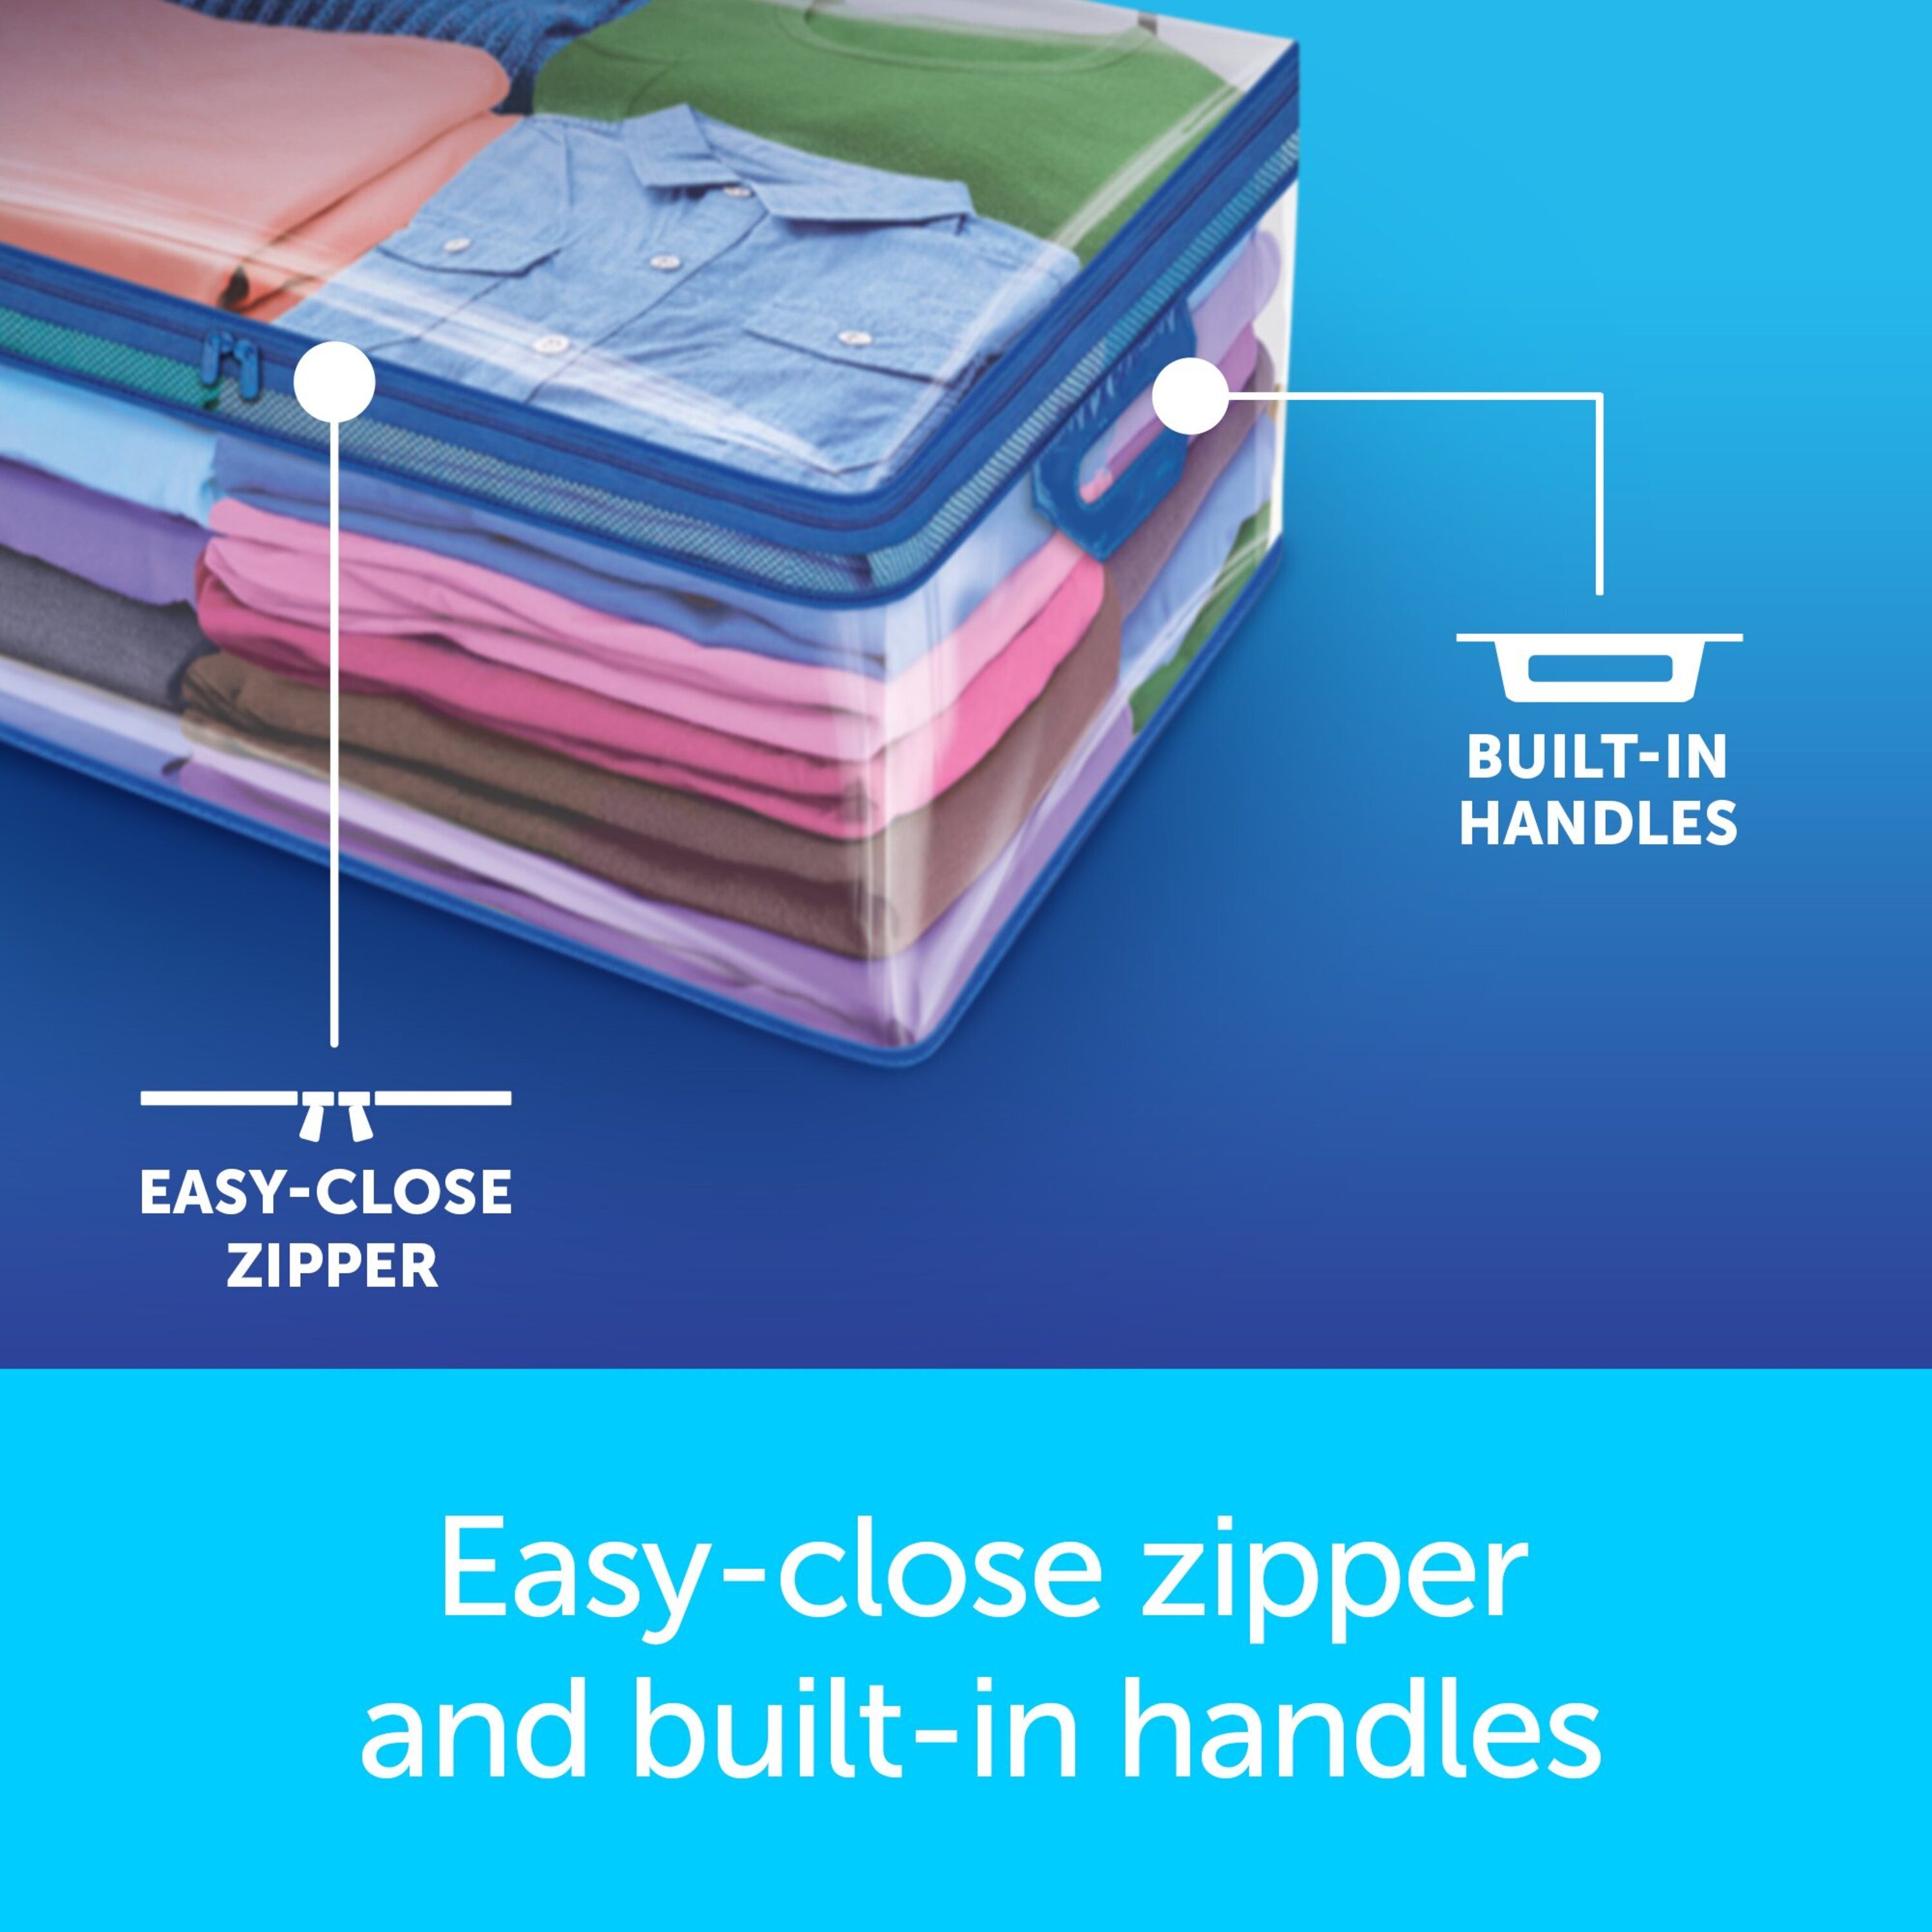 Ziploc Flexible Storage Bags Review: I Swear By It